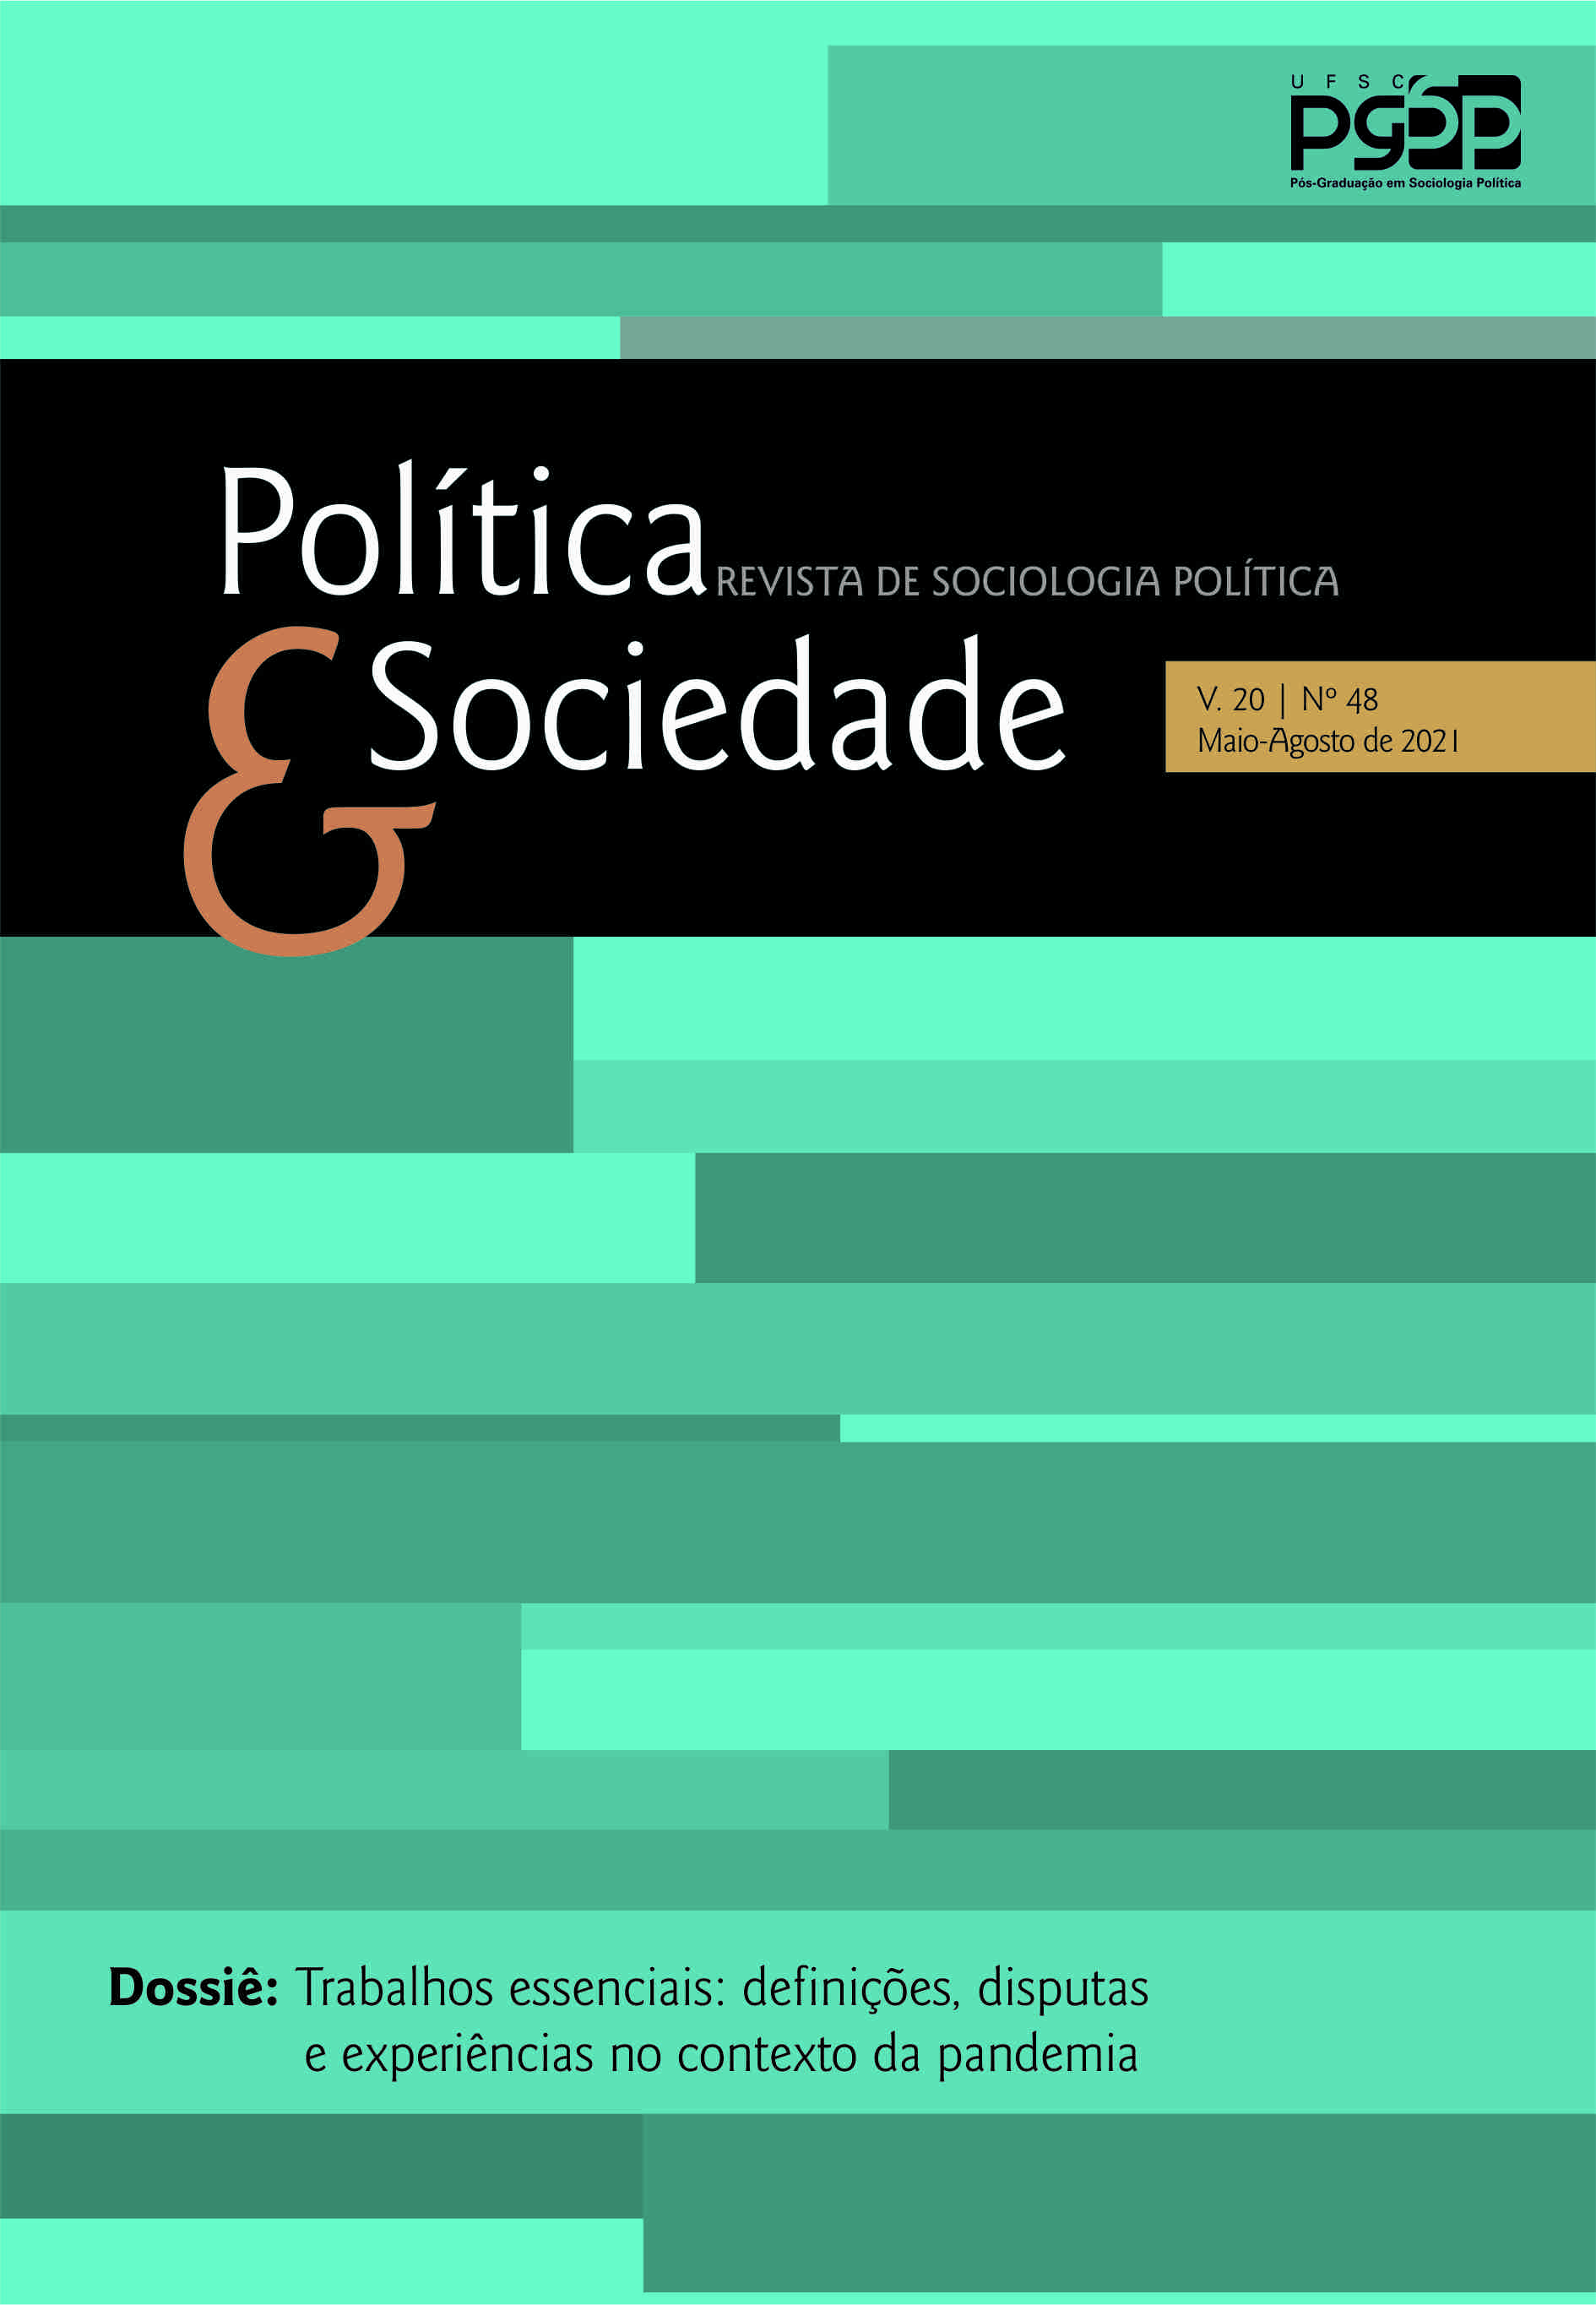 APOL 02 FILOSOFIA POLITICA 100 PONTOS - Filosofia Política